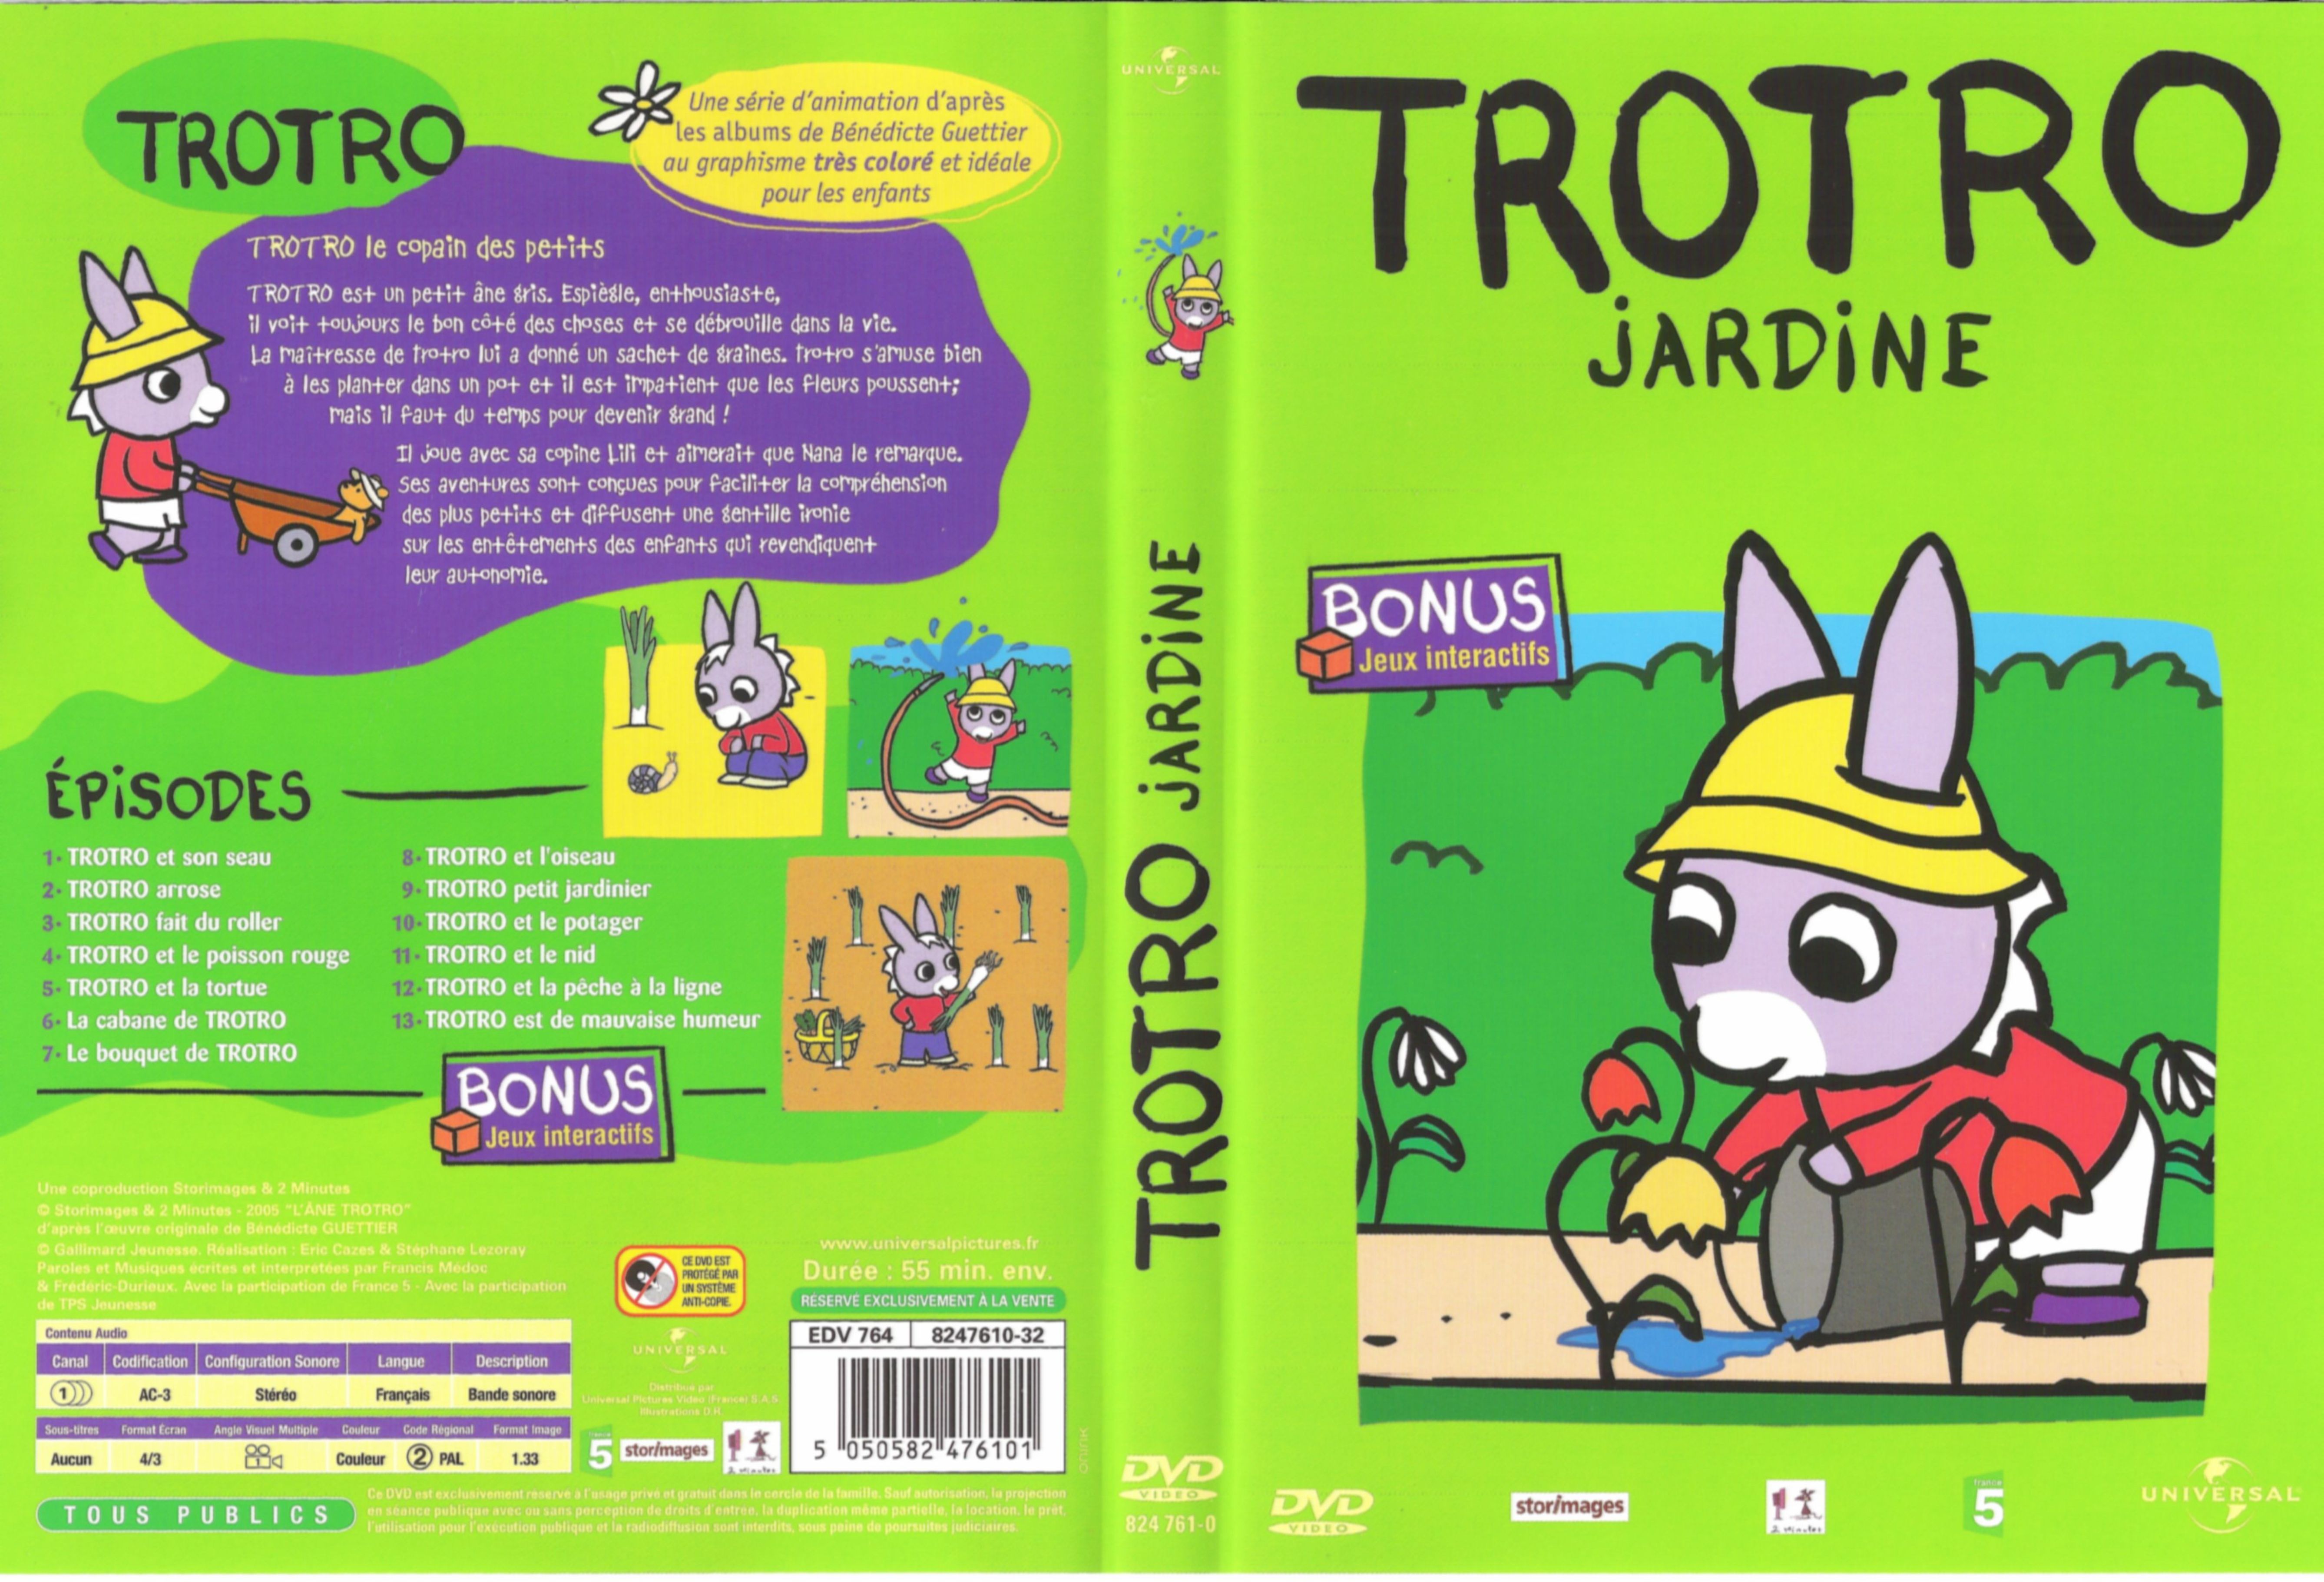 Jaquette DVD Trotro jardine